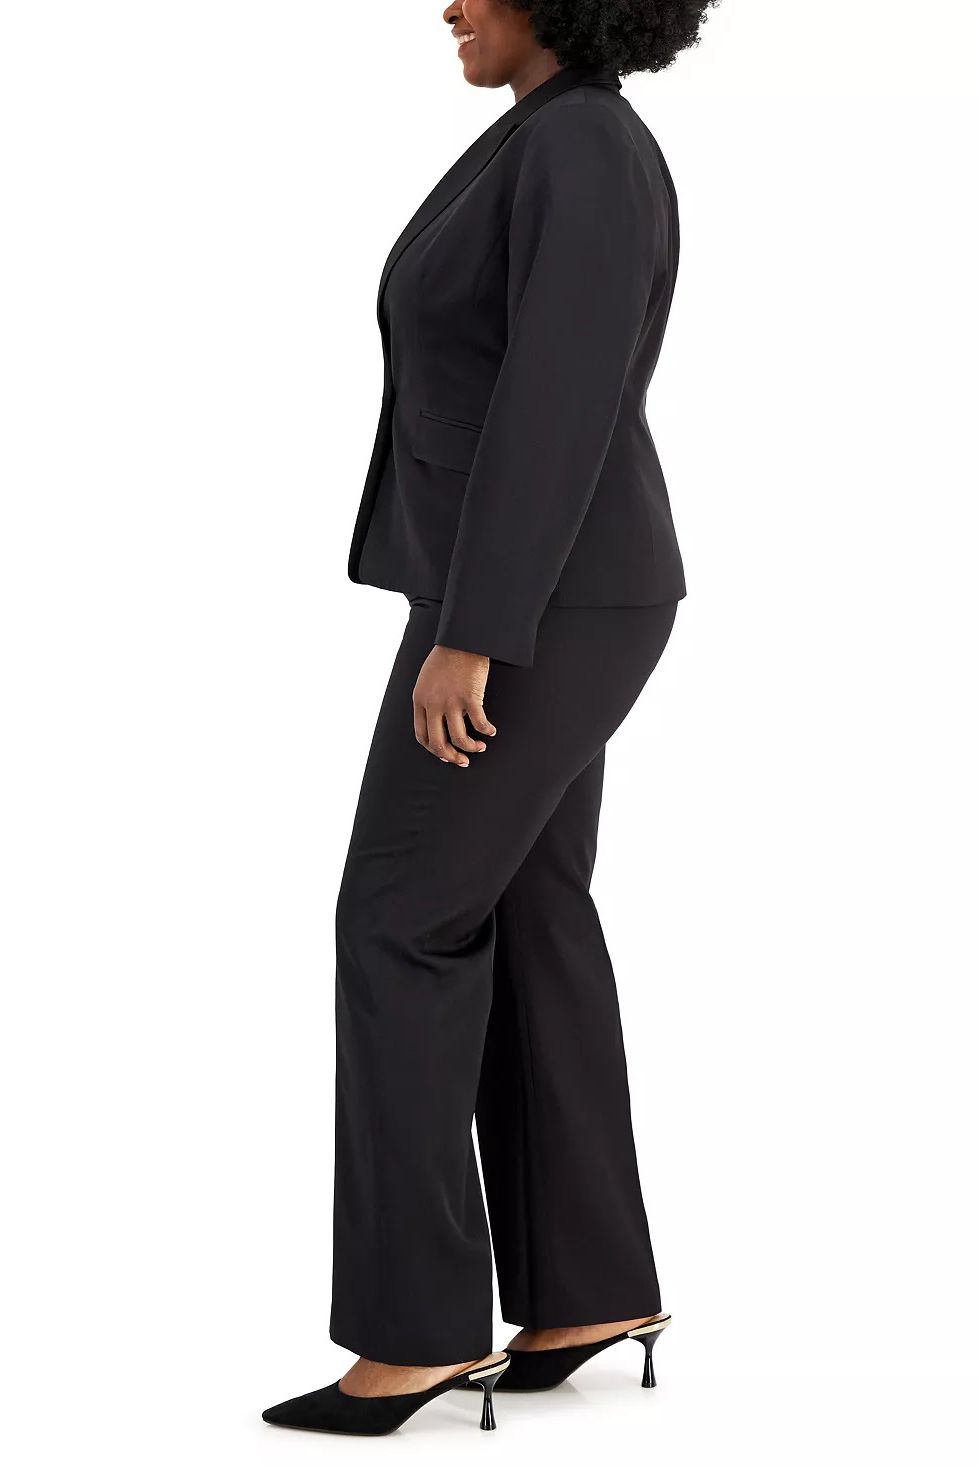 Le Suit Plus Size Plus Size Black Notched Collar Suit